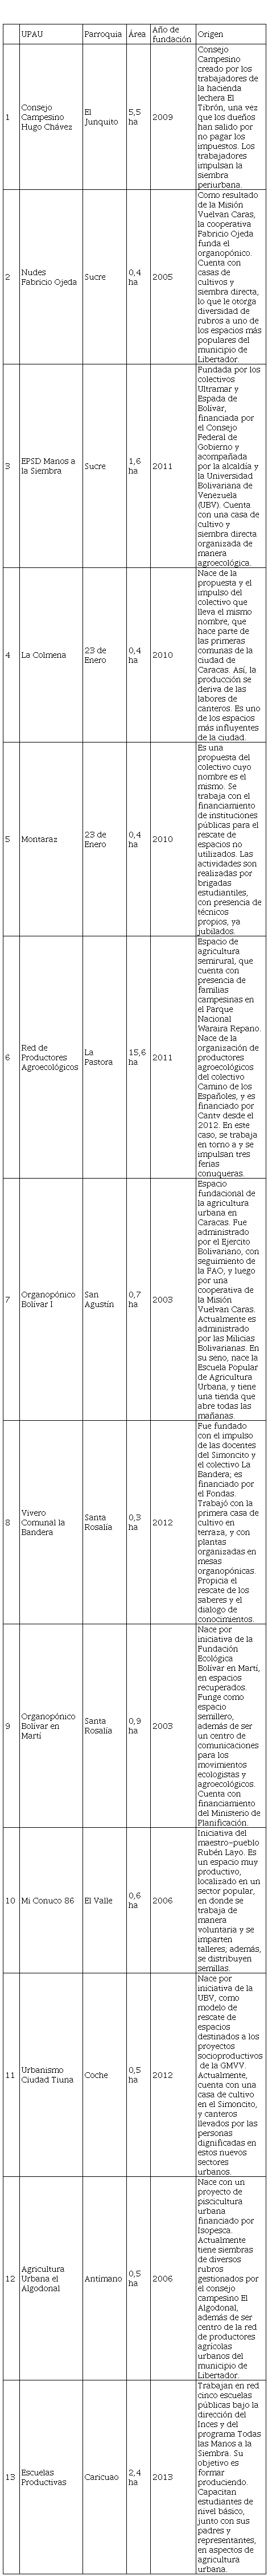 Identificación y descripción de las unidades
de producción agrícola urbana del municipio de Libertador, en Caracas